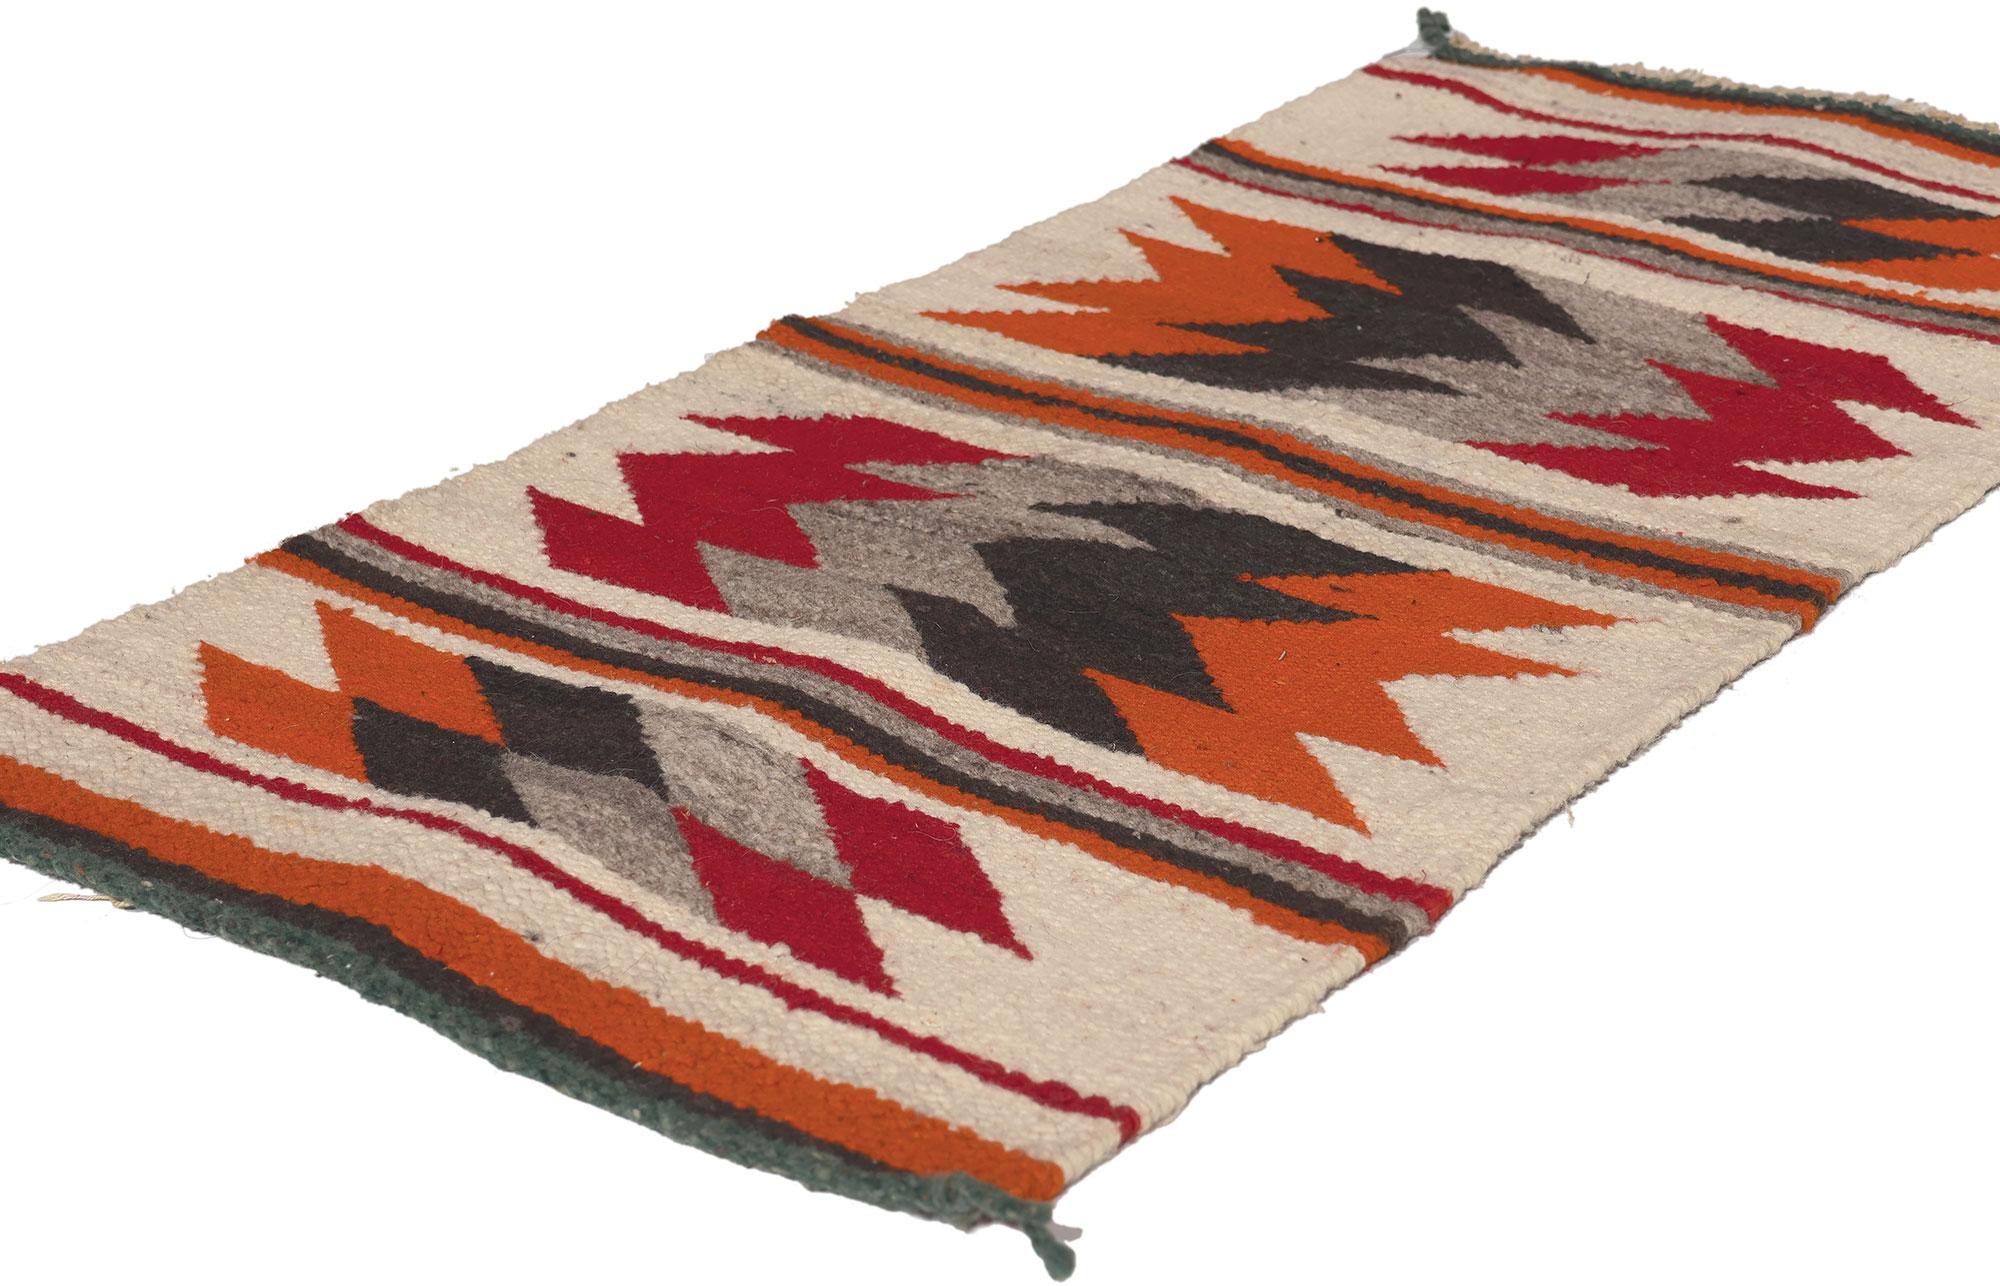 78627 Antiker Eye Dazzler Navajo-Musterteppich, 01'06 x 03'02.
Dieser handgewebte Teppich im Stil der amerikanischen Navajo-Indianer vereint den modernen Stil des Südwestens mit dem Luxus einer Lodge. Das auffällige Eye Dazzler-Design und die erdige